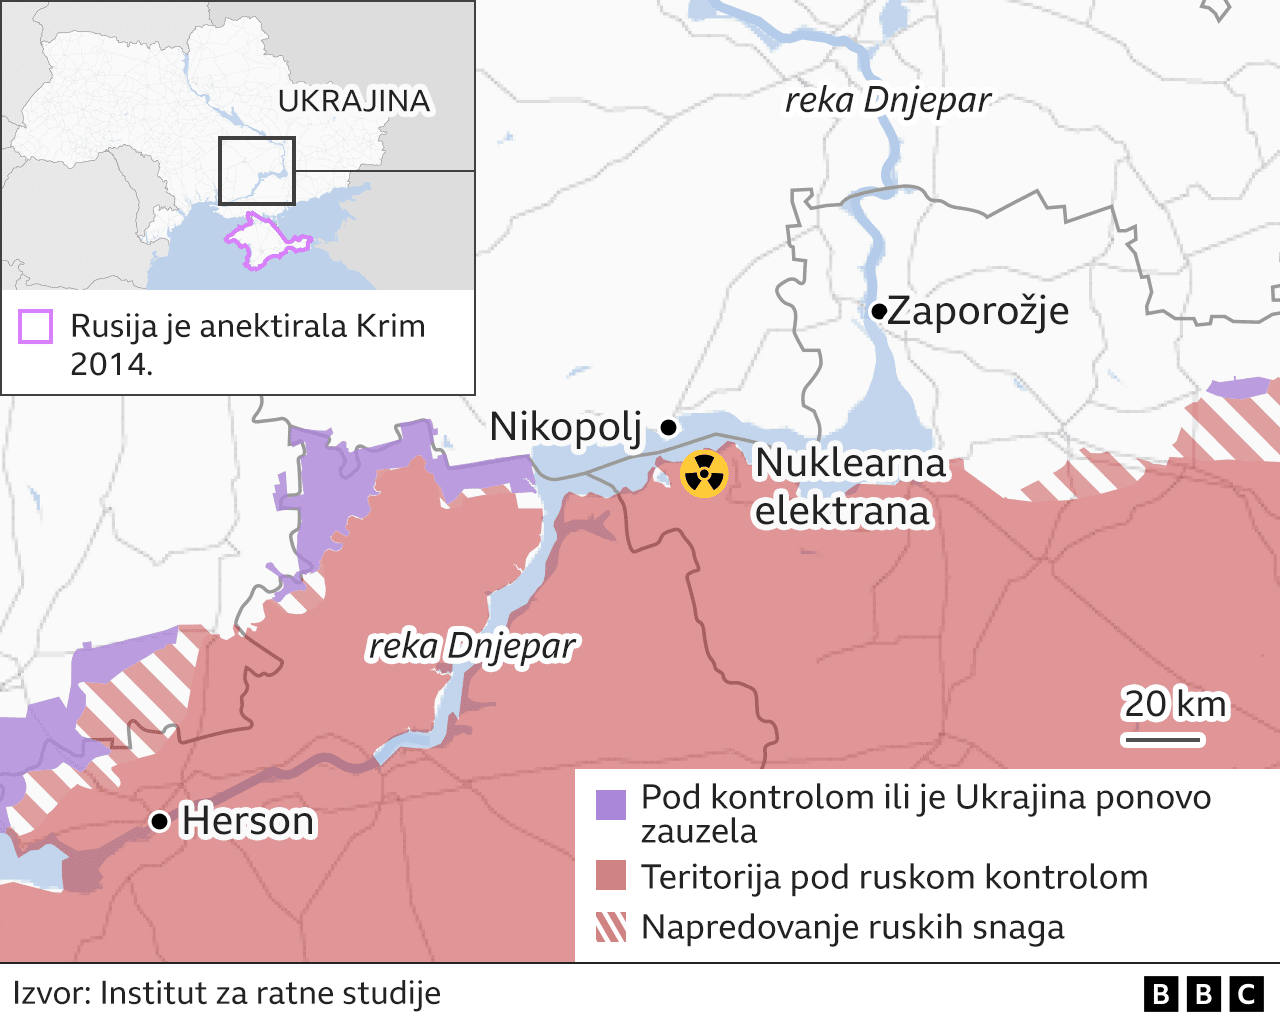 nuklearna elektrana u Zaporožju - mapa